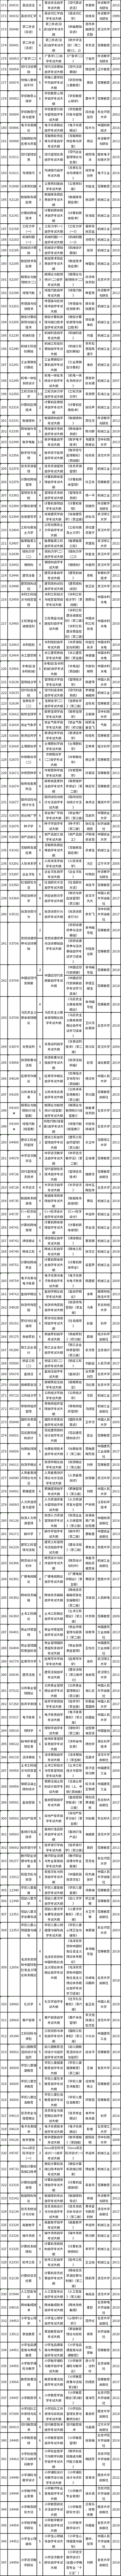 湖北省2023年4月自学考试（面向社会）课程教材及大纲使用情况